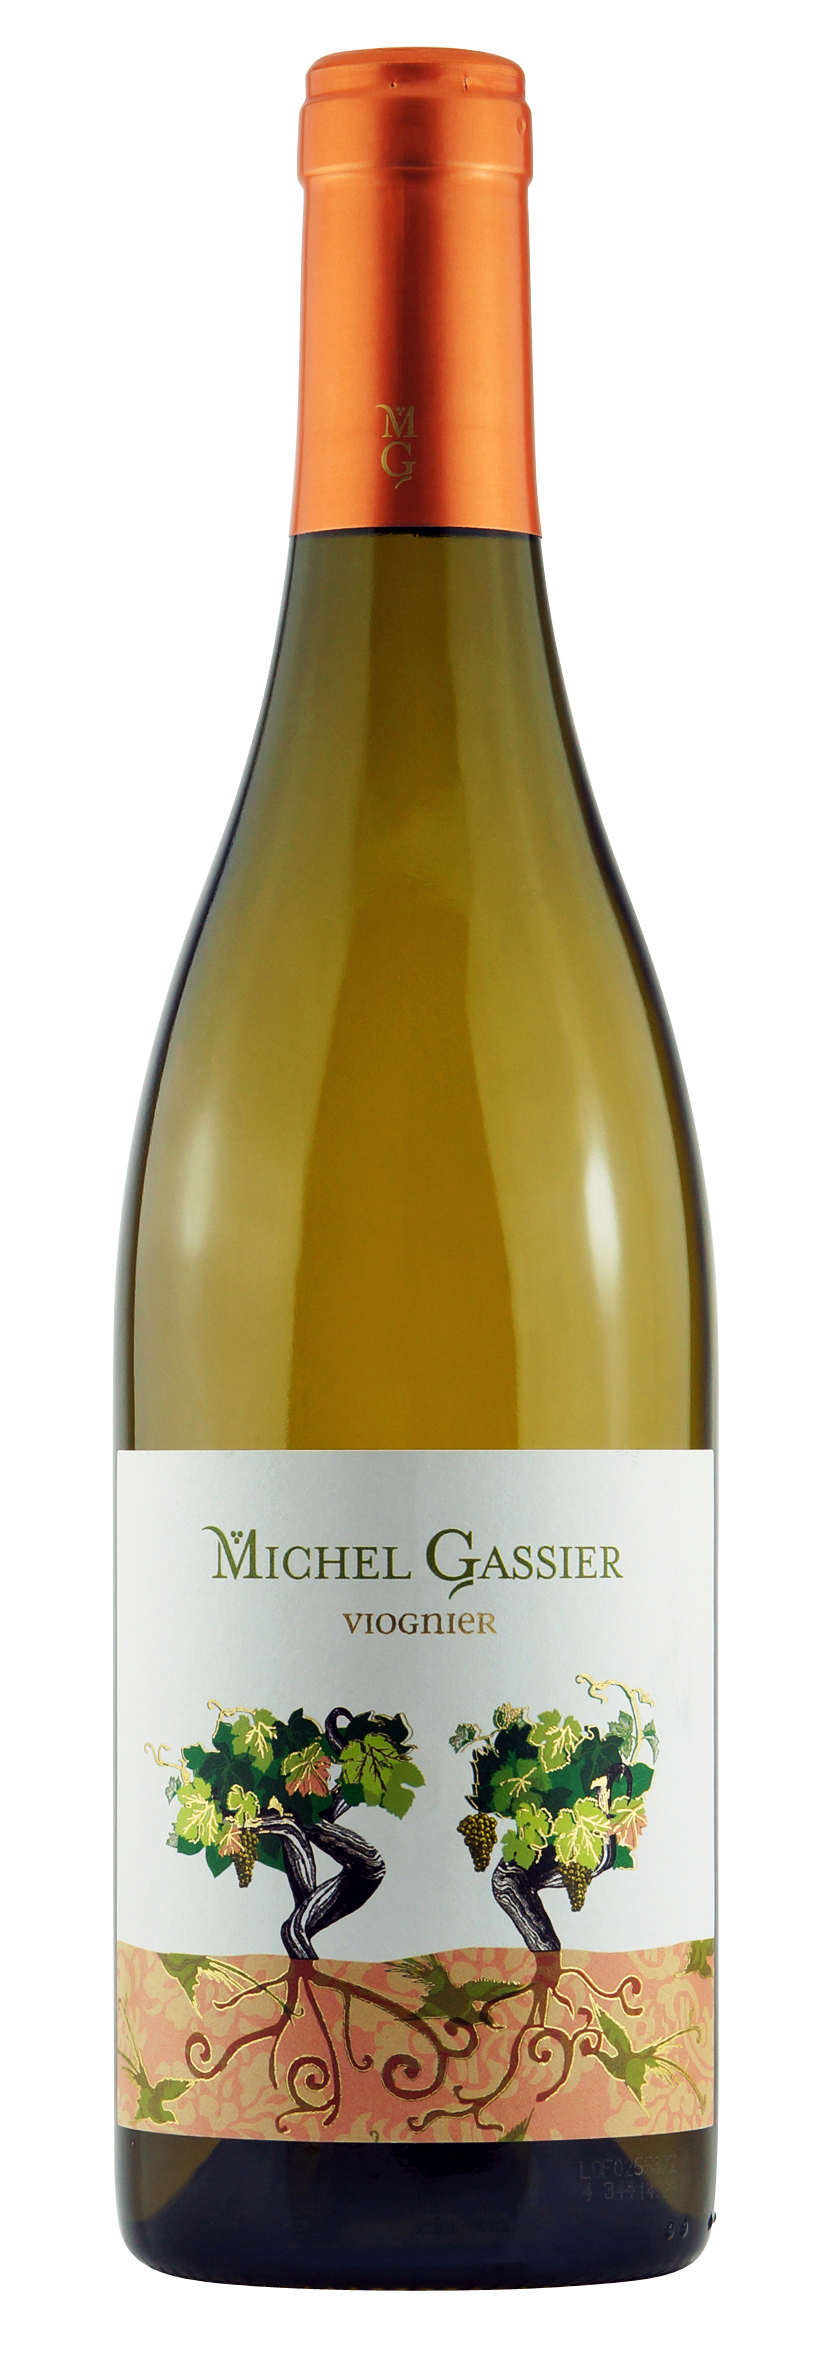 Vin de France Les Piliers Viognier 2014